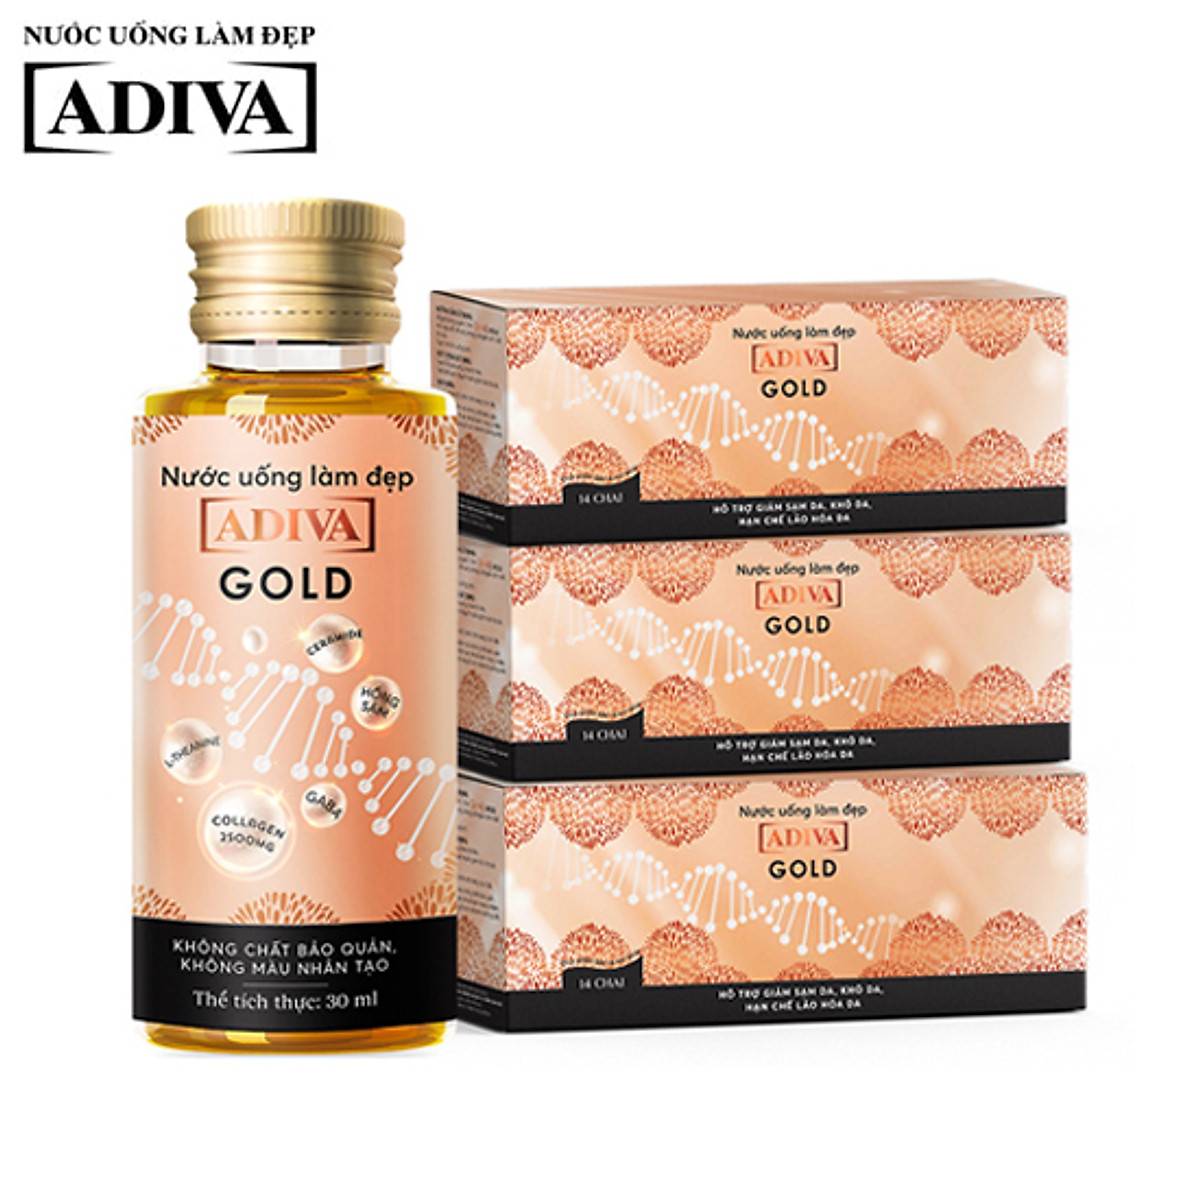 Combo 3 Hộp Gold Adiva Collagen (14 lọ/hộp) - Làm giảm nếp nhăn, ngăn ngừa lão hóa